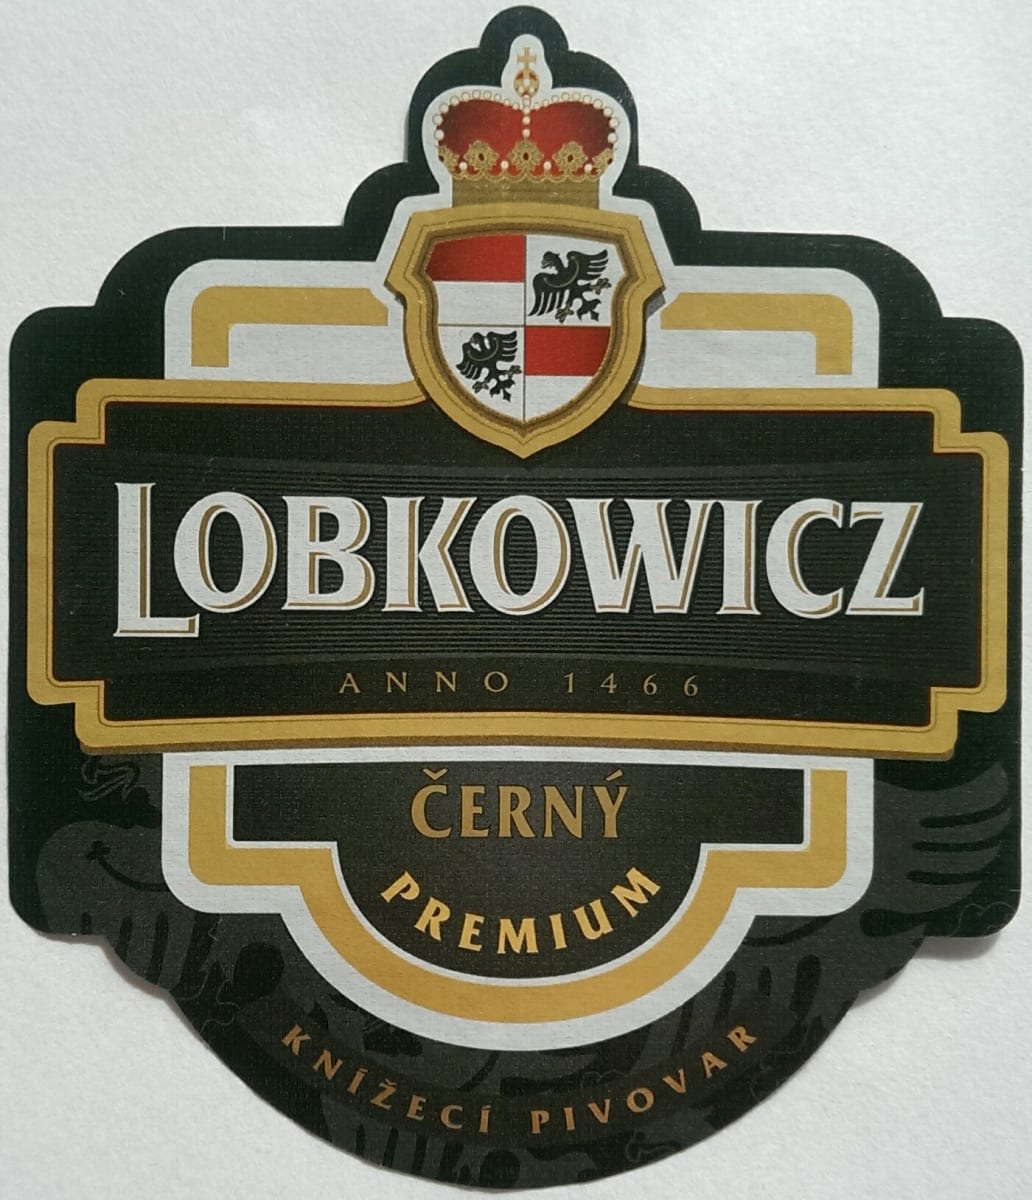 Lobkowicz Černý Premium